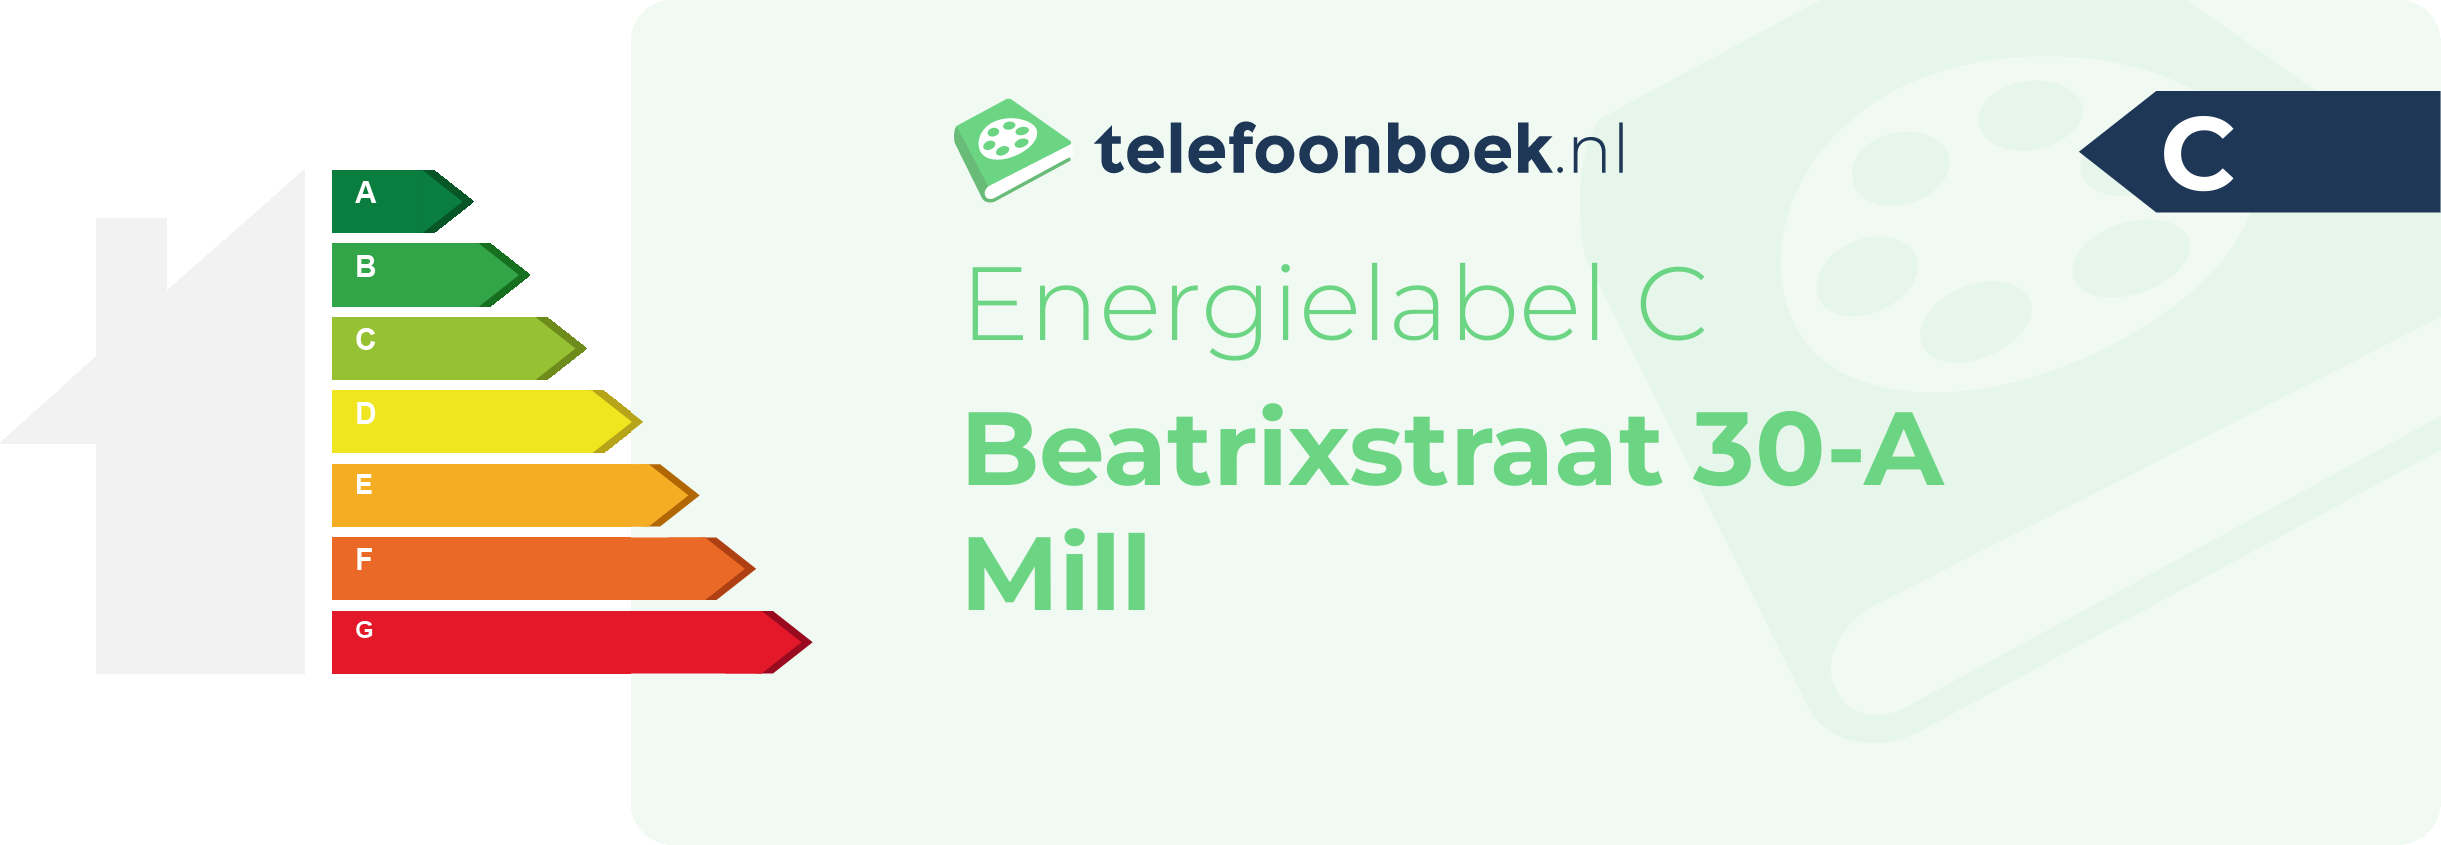 Energielabel Beatrixstraat 30-A Mill